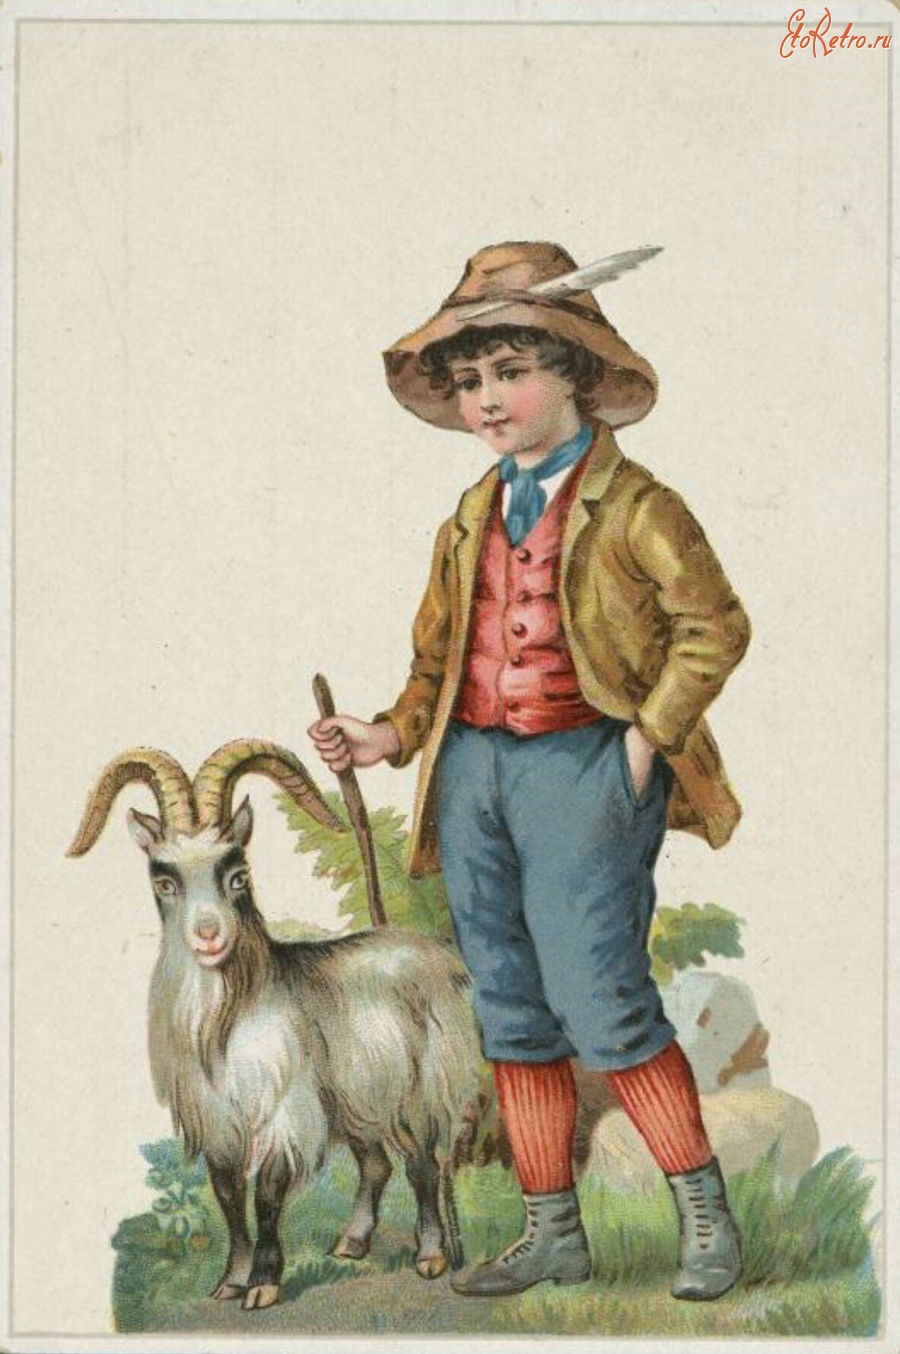 Ретро открытки - Мальчик-пастух в шляпе с пером